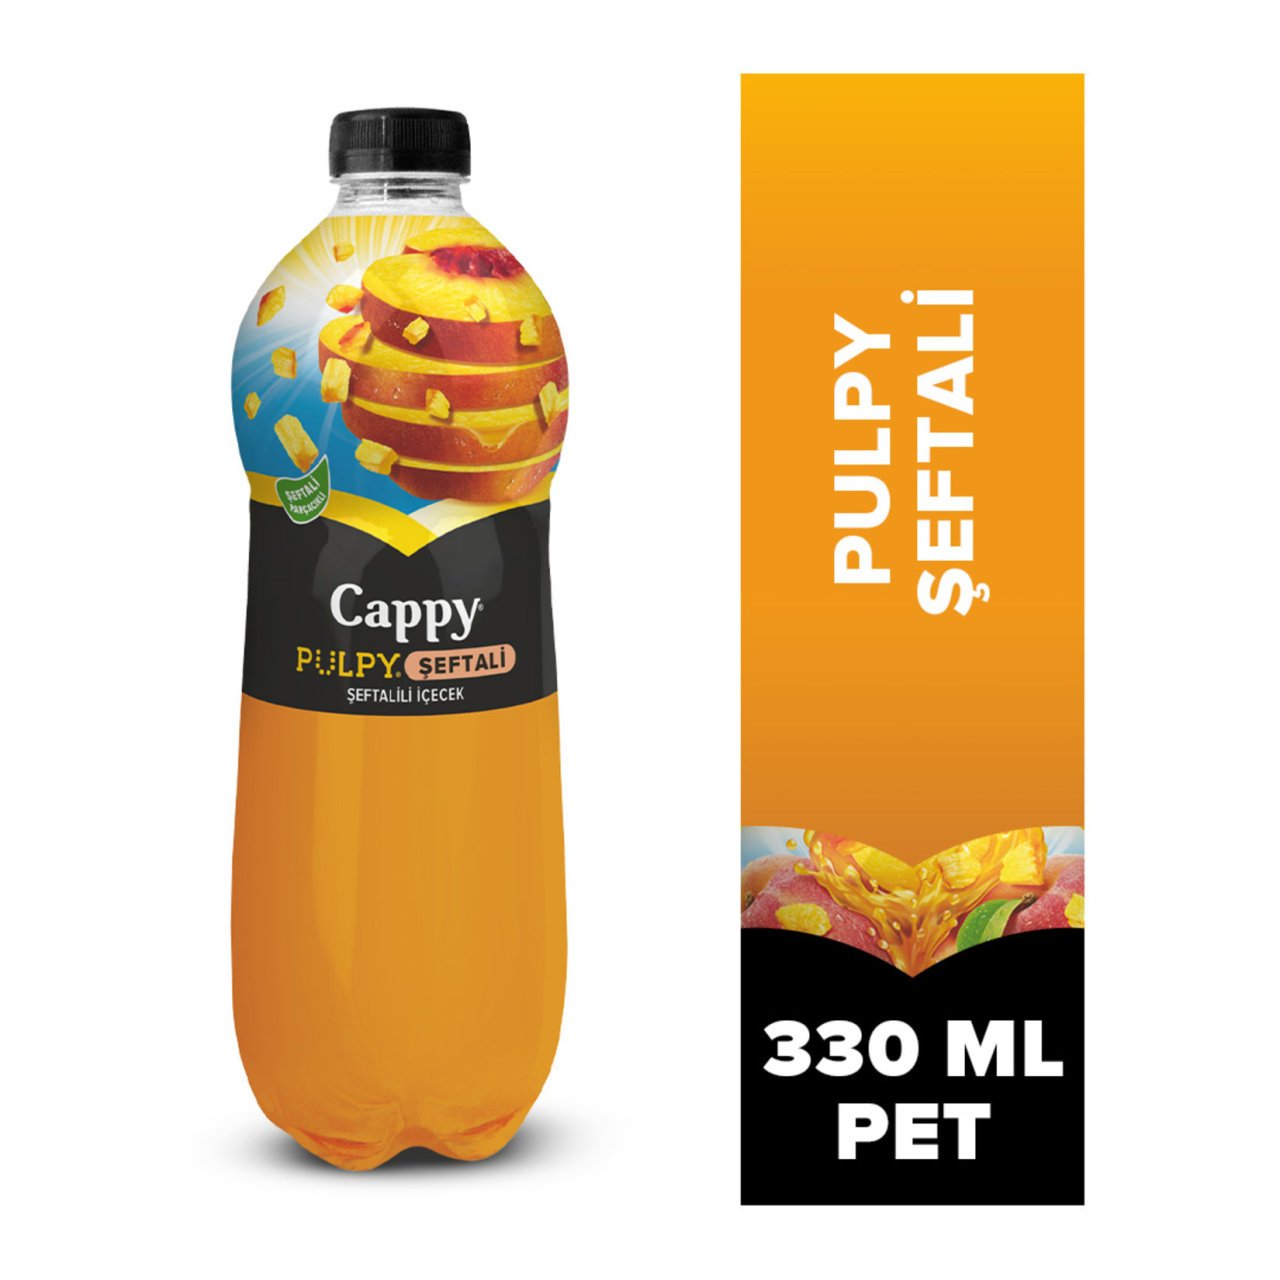 Cappy Pulpy Şeftali Pet 330 ml